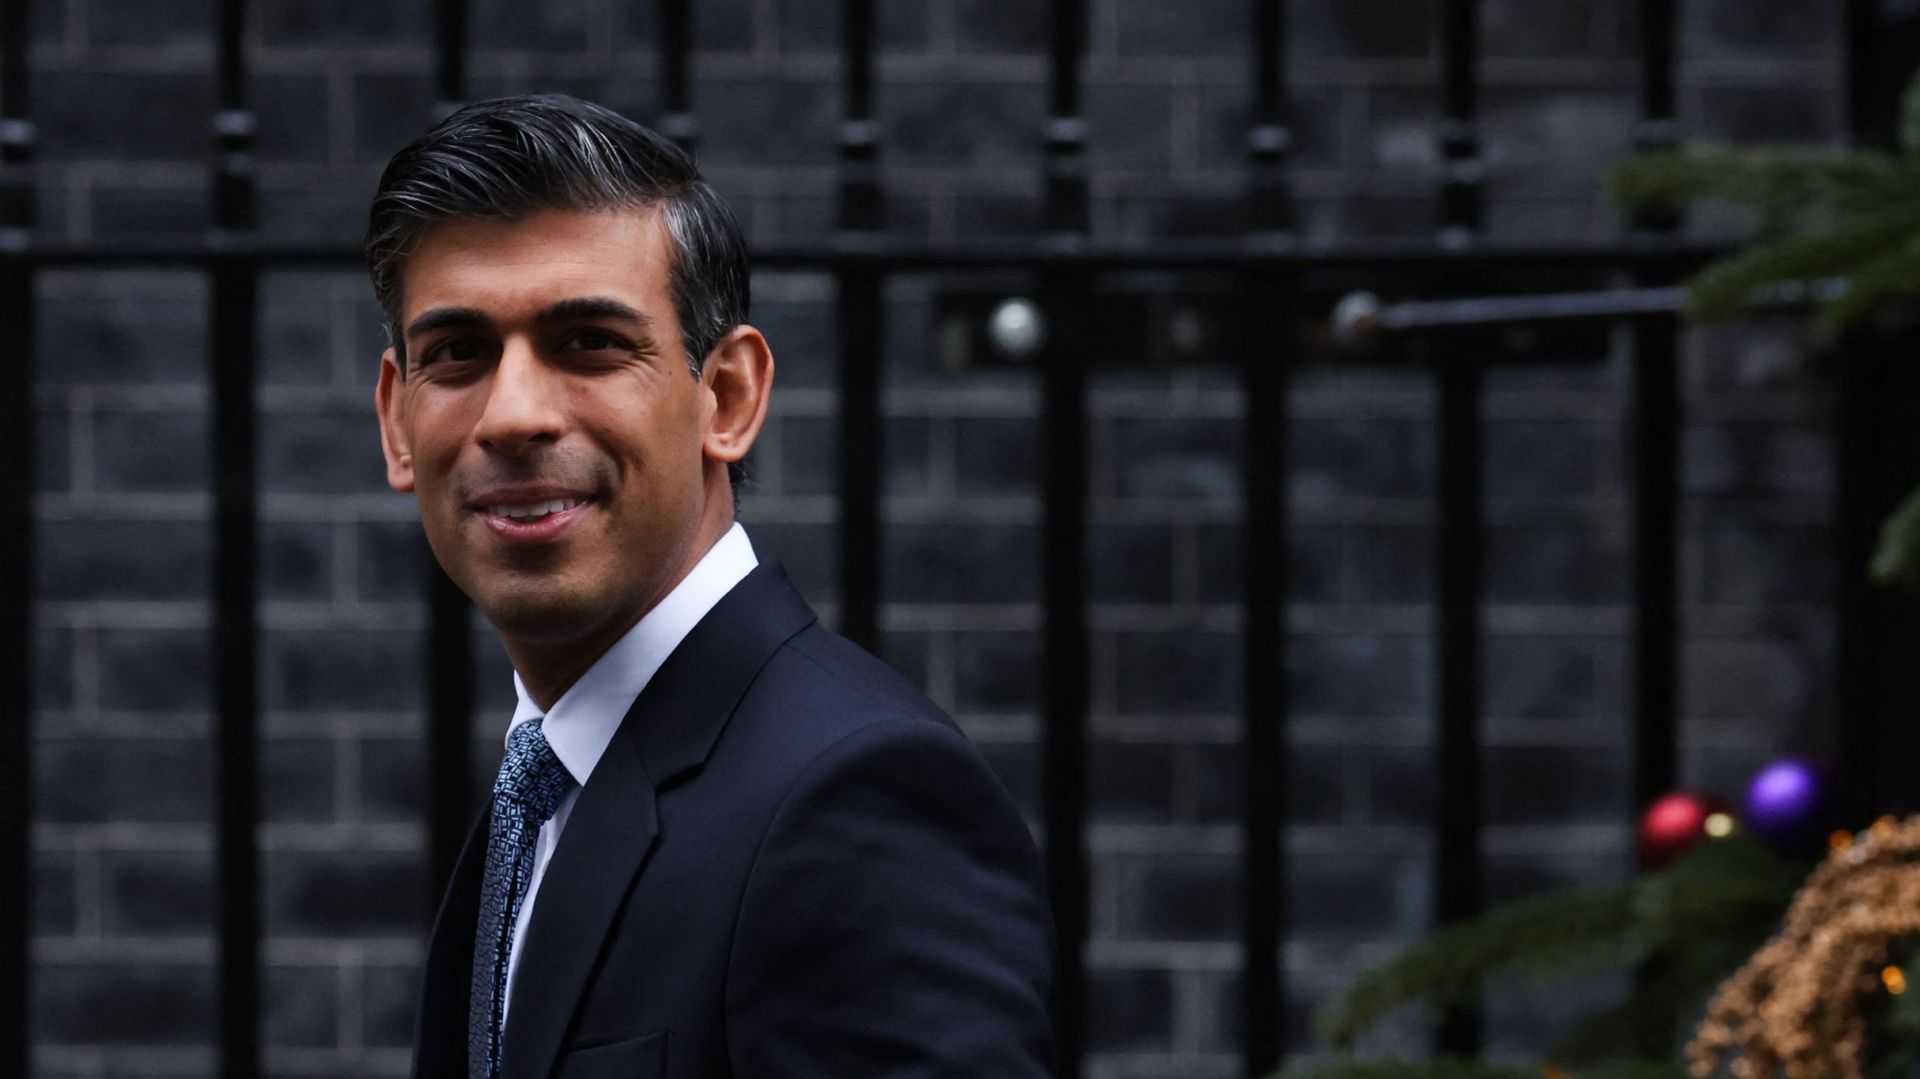 Le Premier ministre britannique Rishi Sunak quitte le 10 Downing Street, à Londres, le 14 décembre 2022, afin d'assister à la session des questions du Premier ministre à la Chambre des communes.